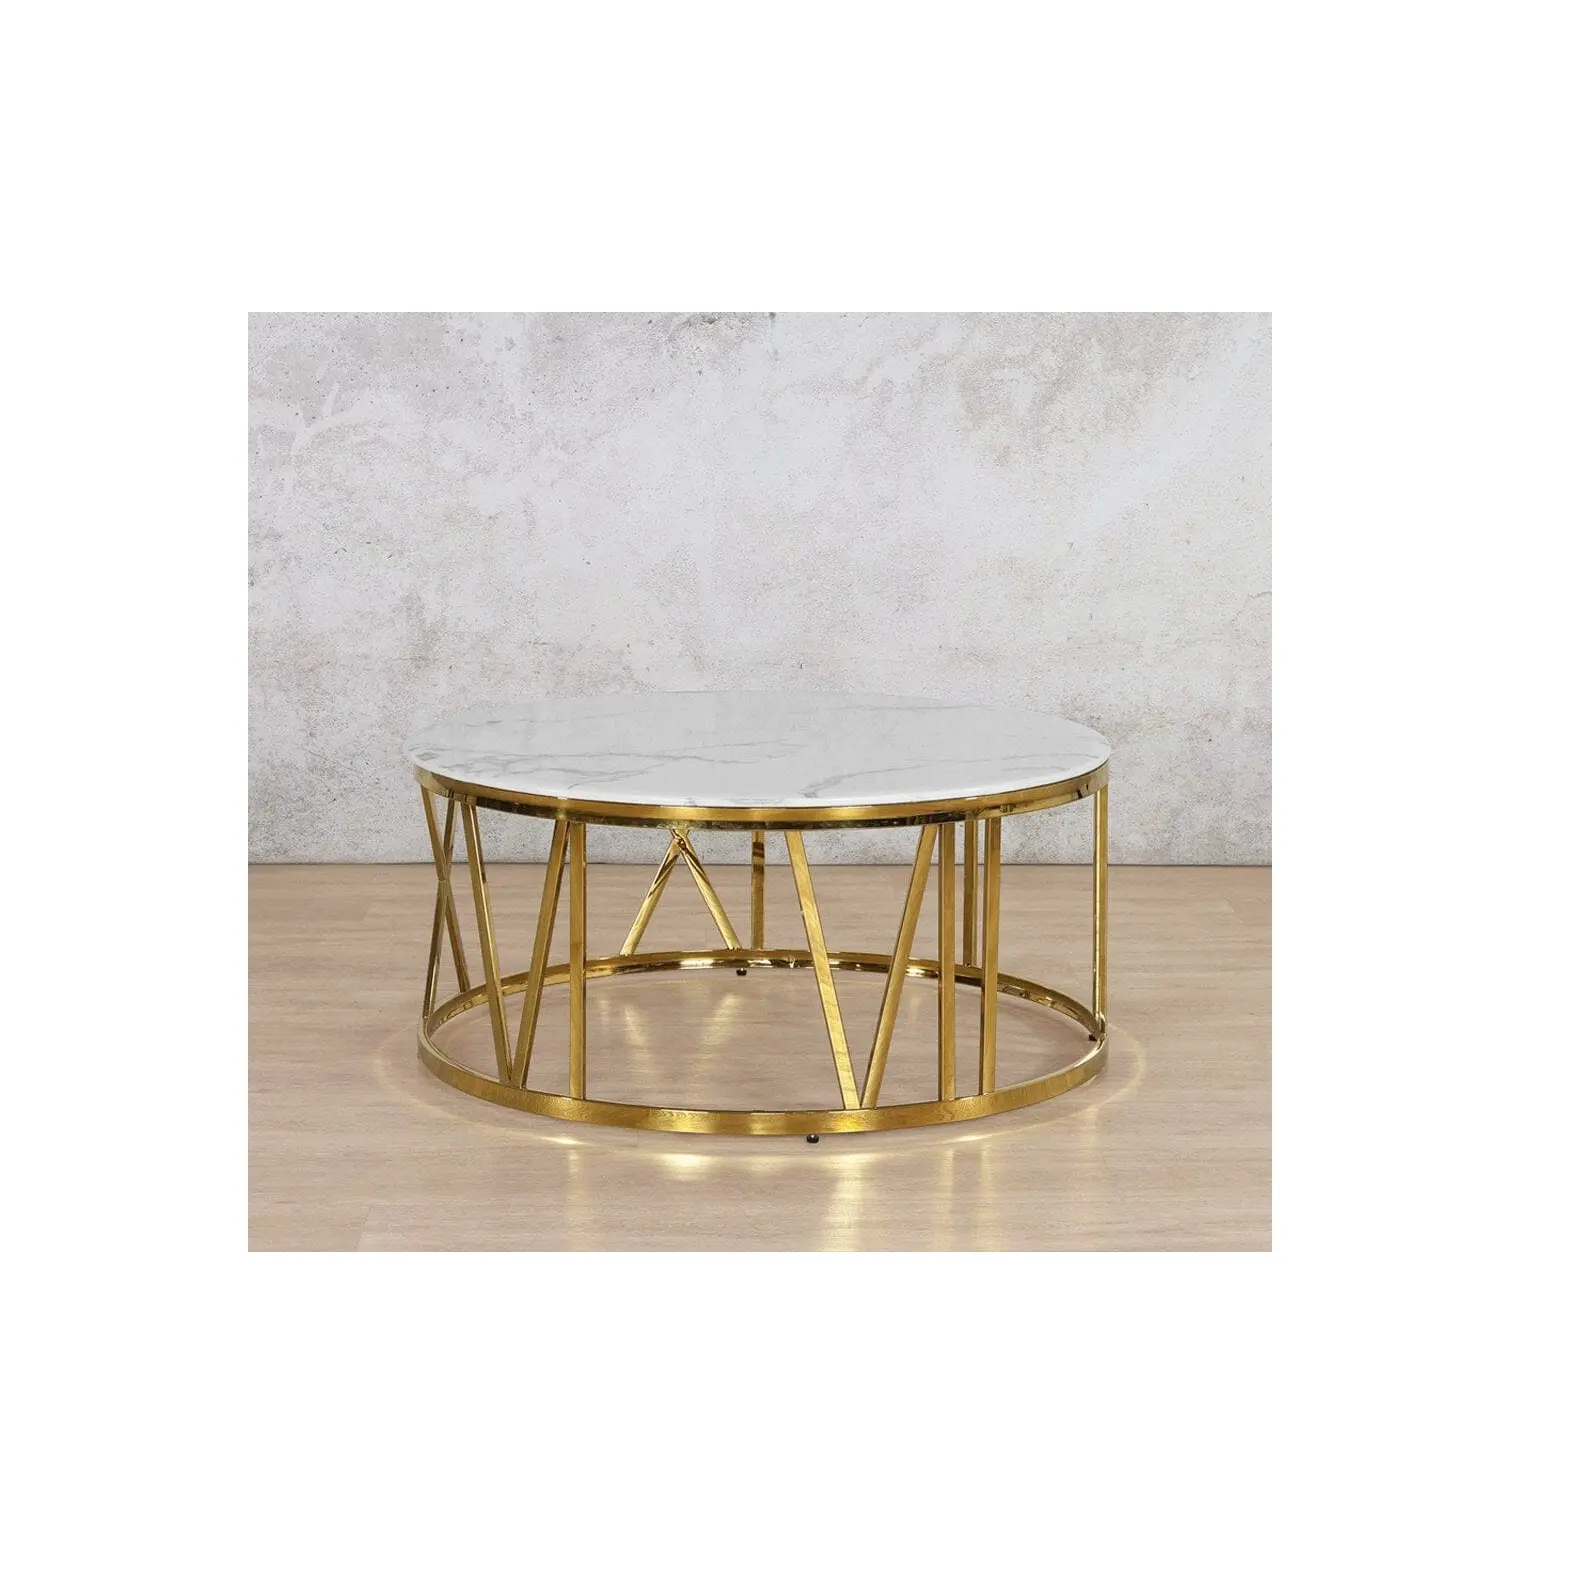 Журнальный столик из металла и мрамора, круглый столик с перекрещенными ножками, золотой с белой мраморной столешницей, простой дизайн, боковой столик